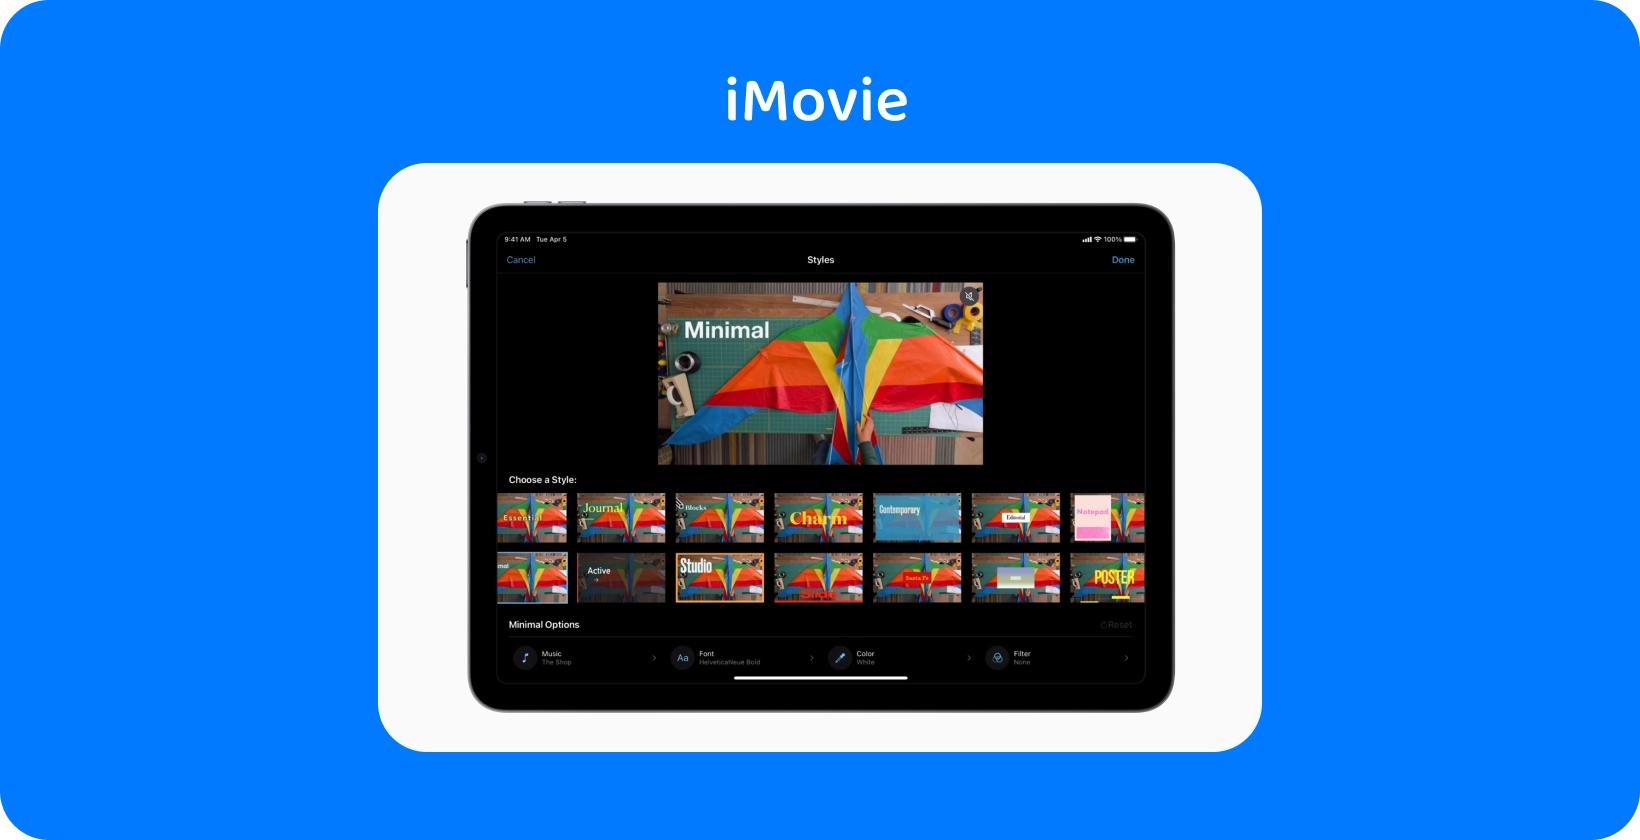 iMovie na tablecie wyświetla różne style edycji wideo, z kolorowym projektem latawca ustawionym na motyw "Minimal".